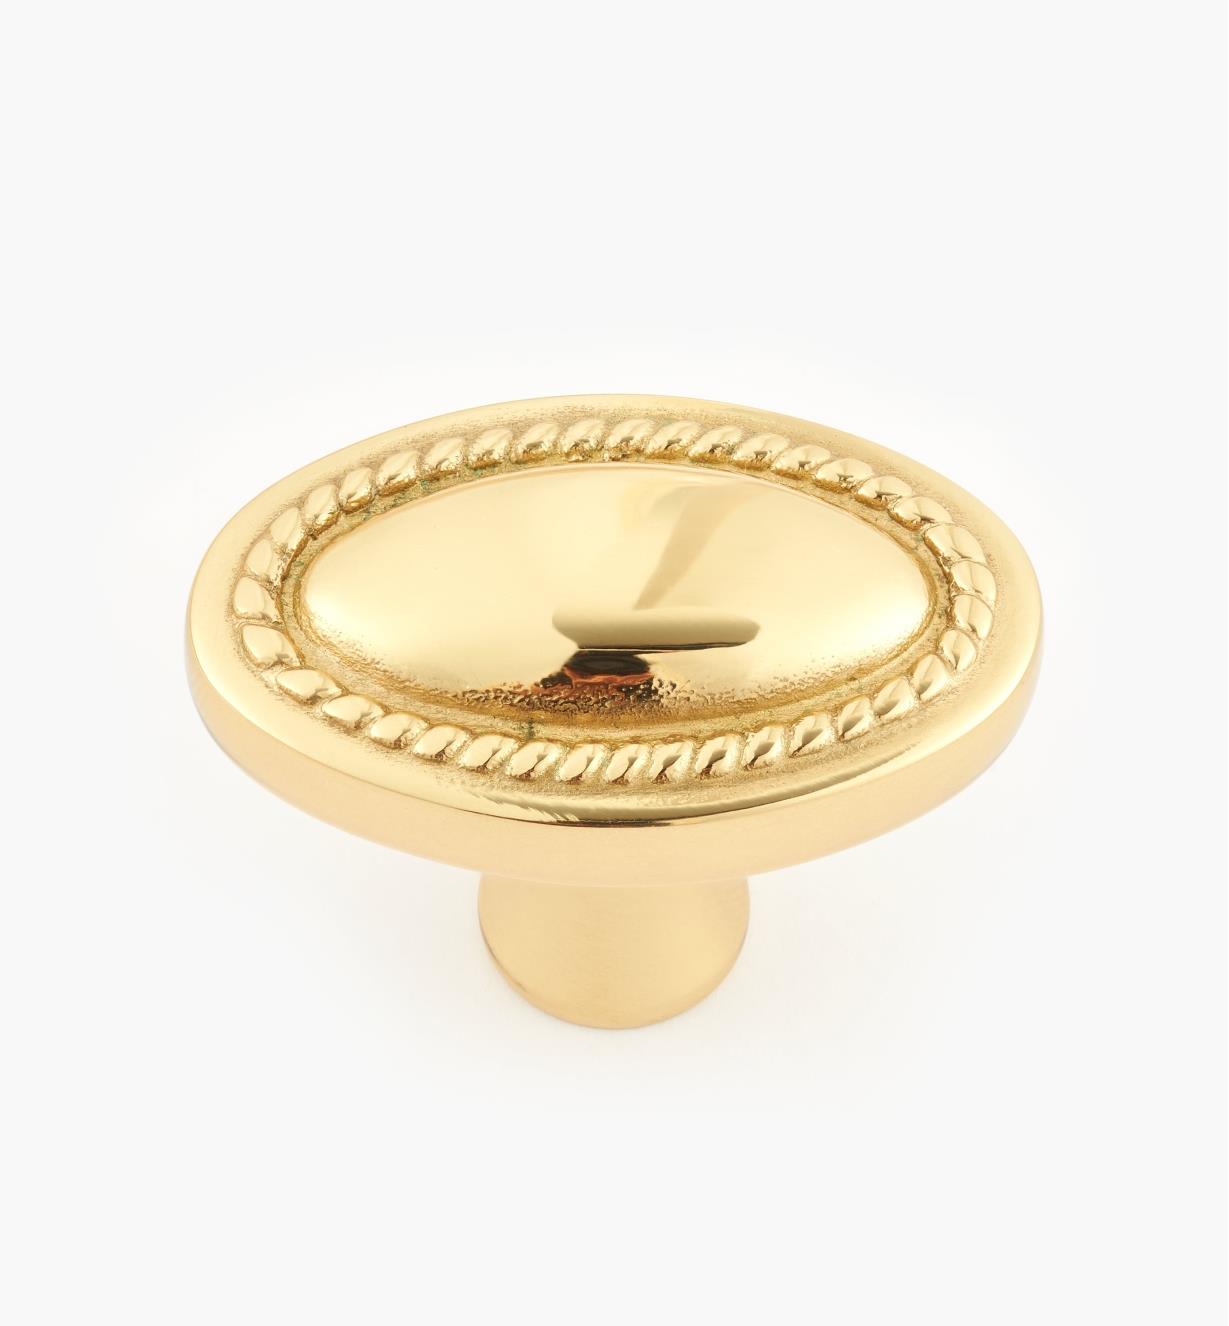 01W3940 - Oval Knob, Polished Brass